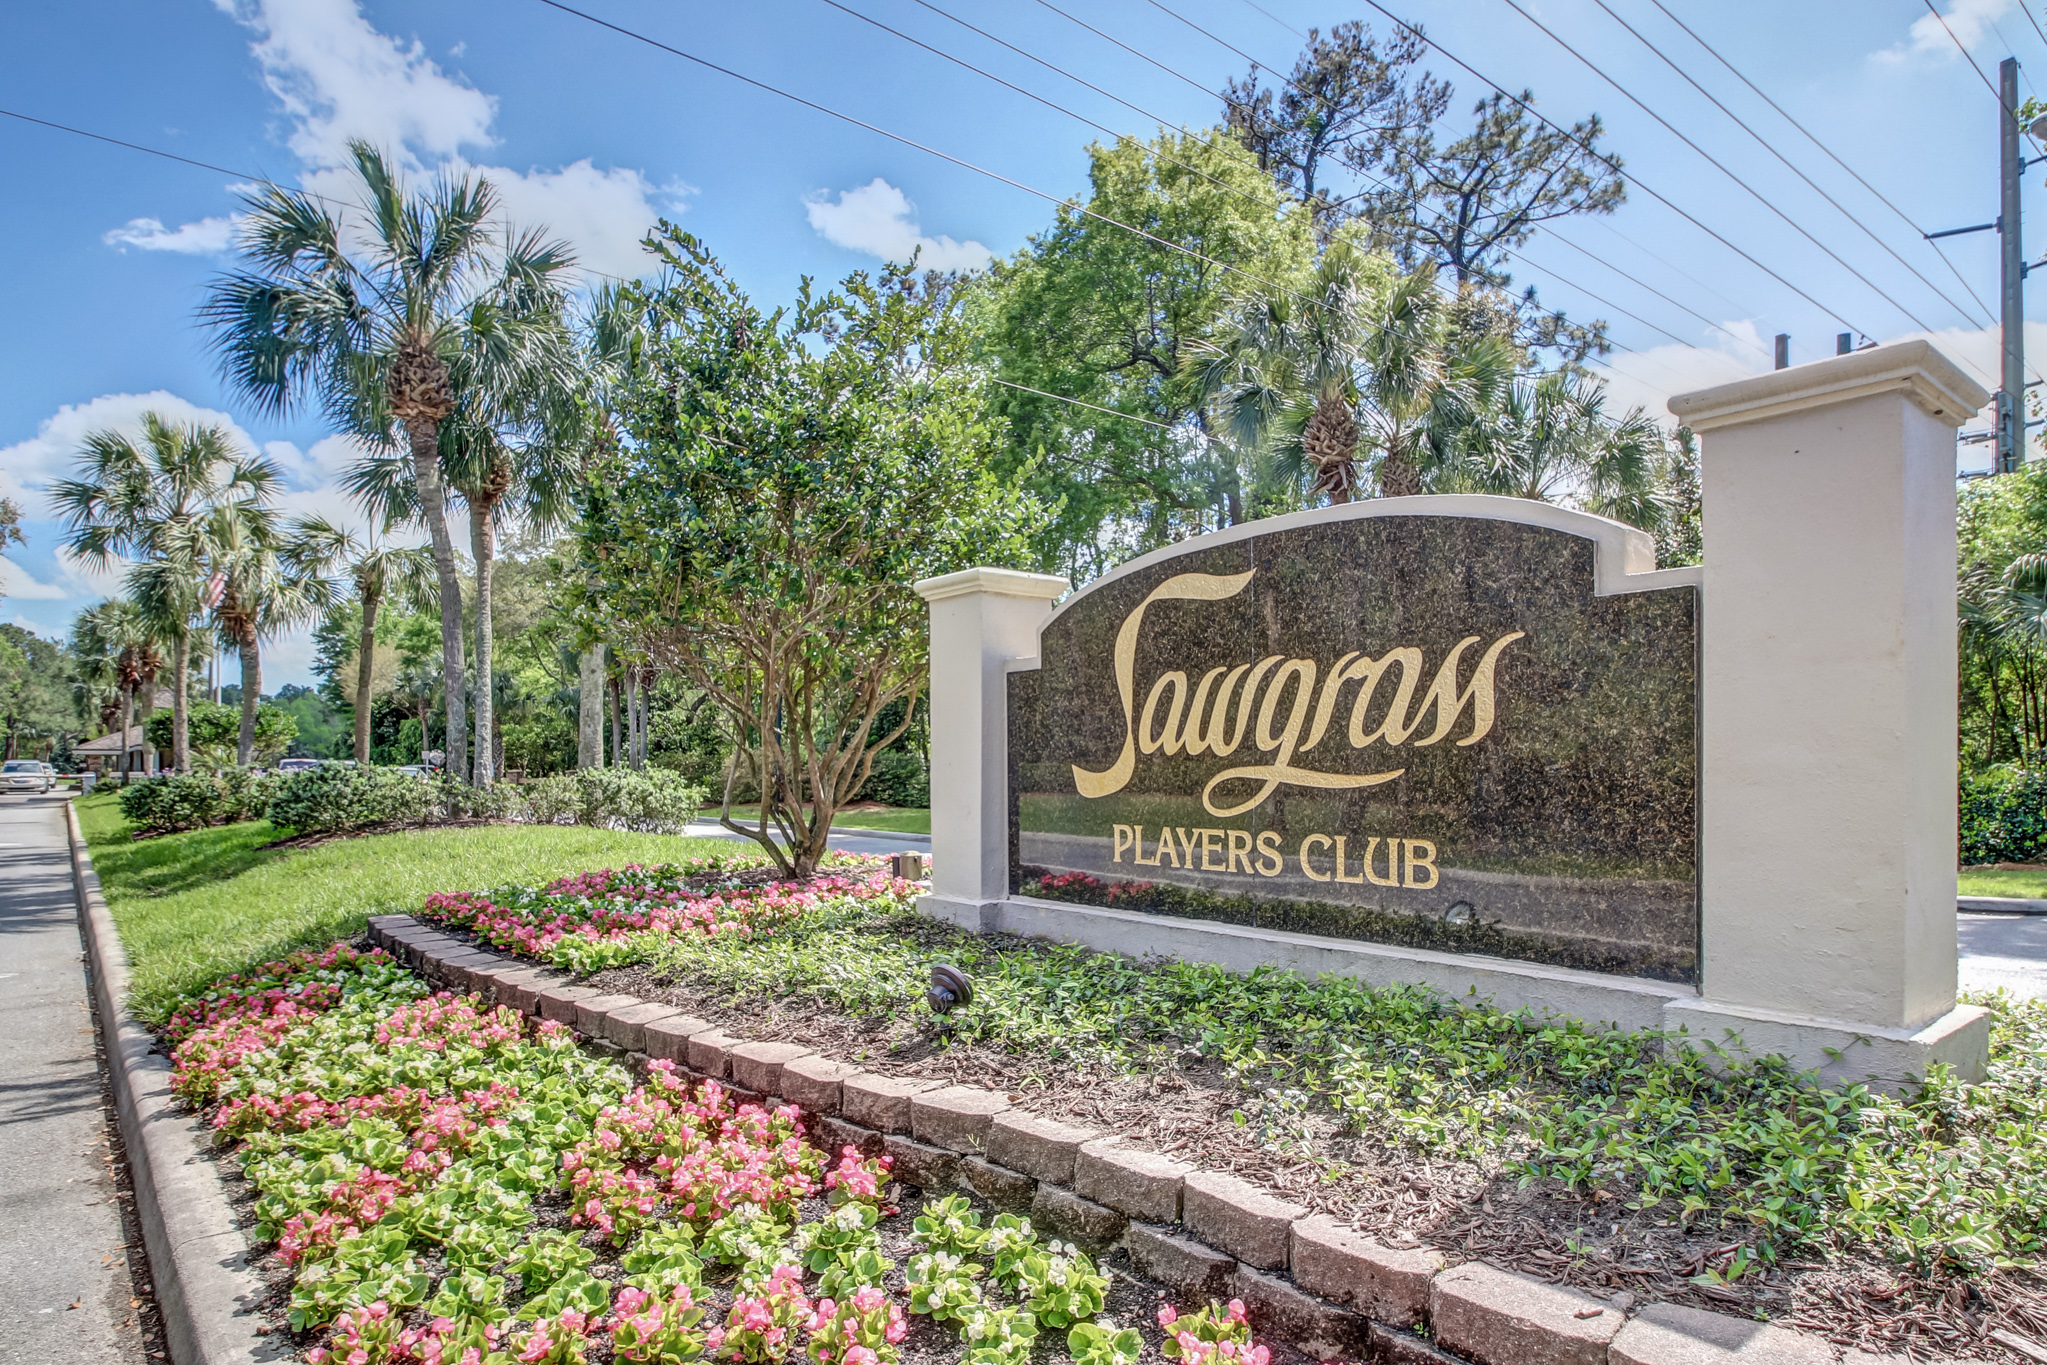 Sawgrass Players Club